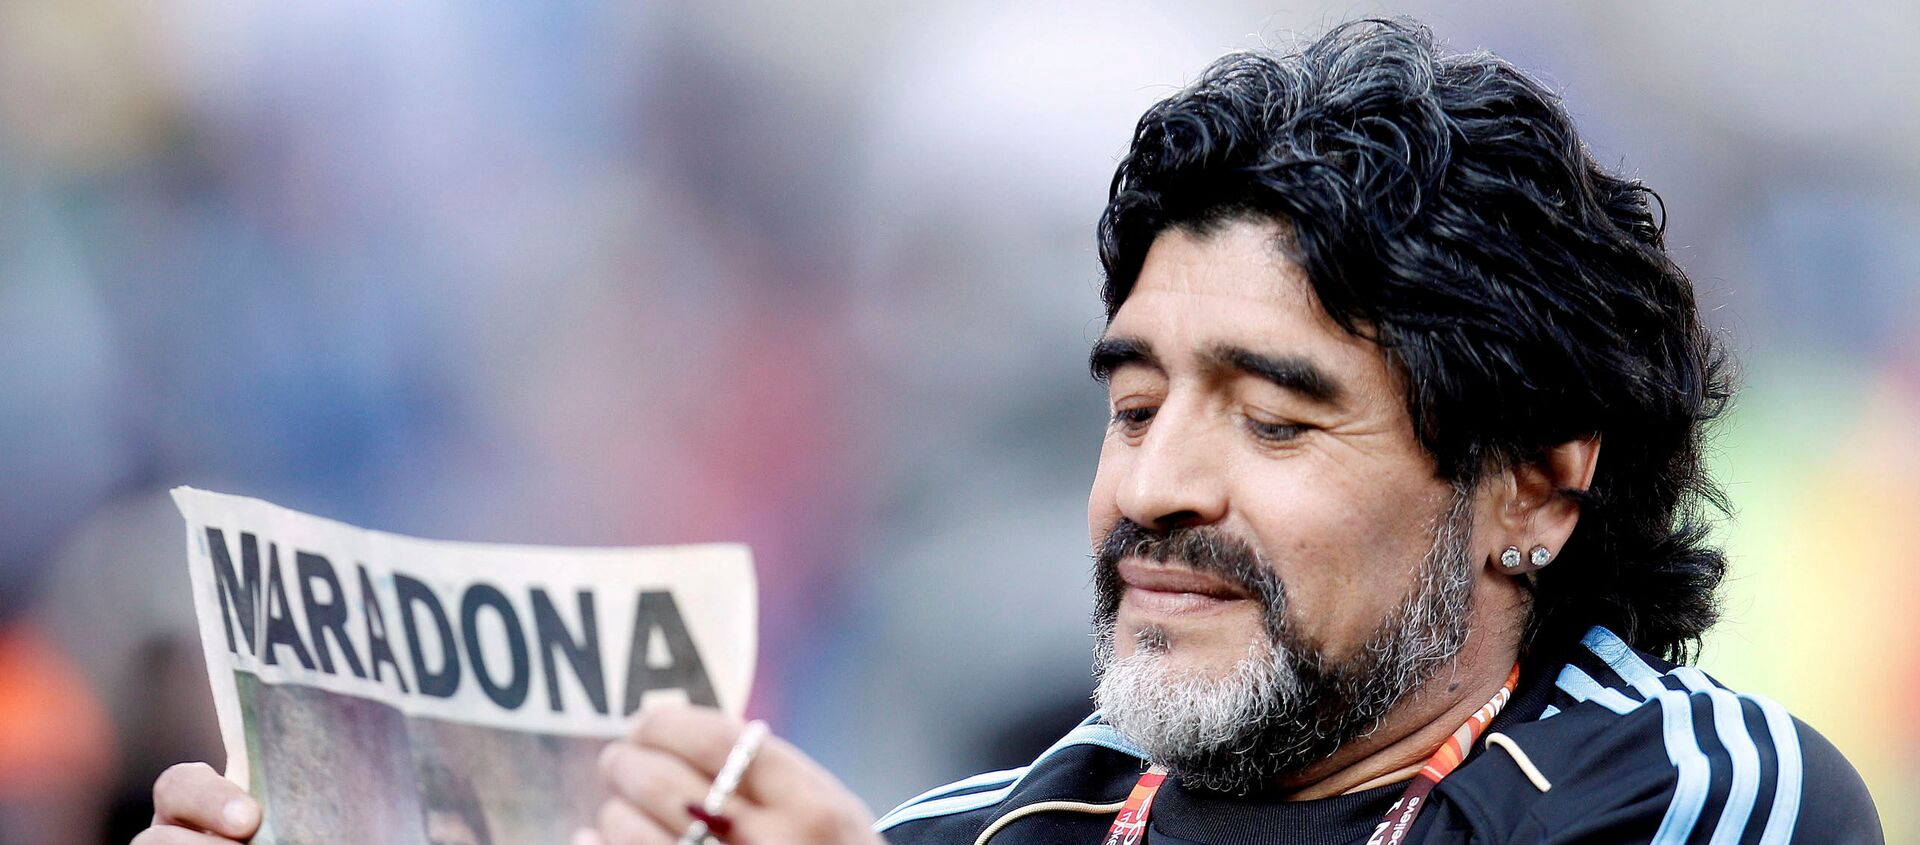 Diego Armando Maradona, exfutbolista argentino - Sputnik Mundo, 1920, 30.11.2020